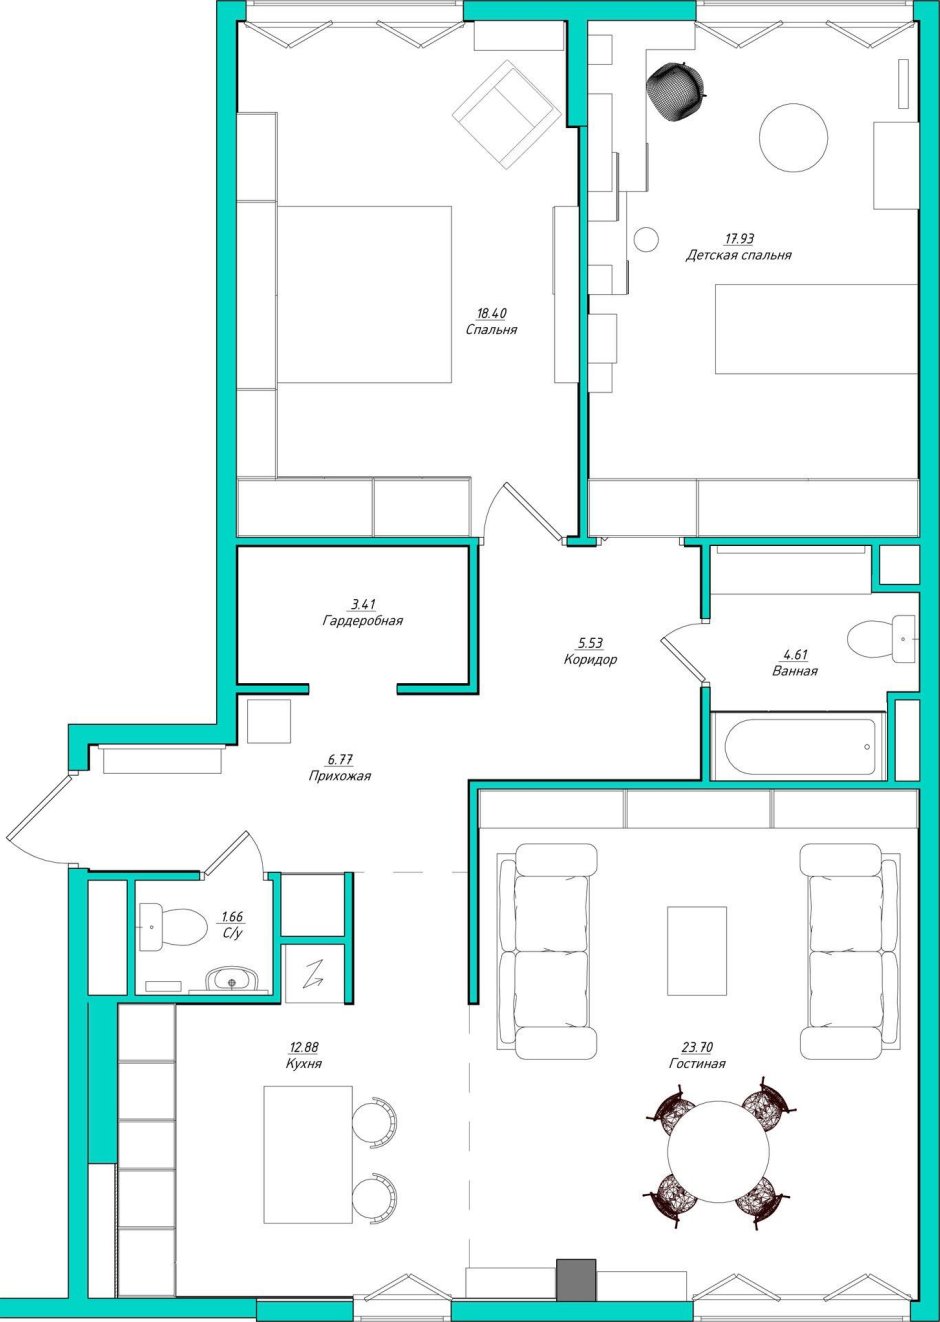 Планировка 3х комнатной квартиры 60м2